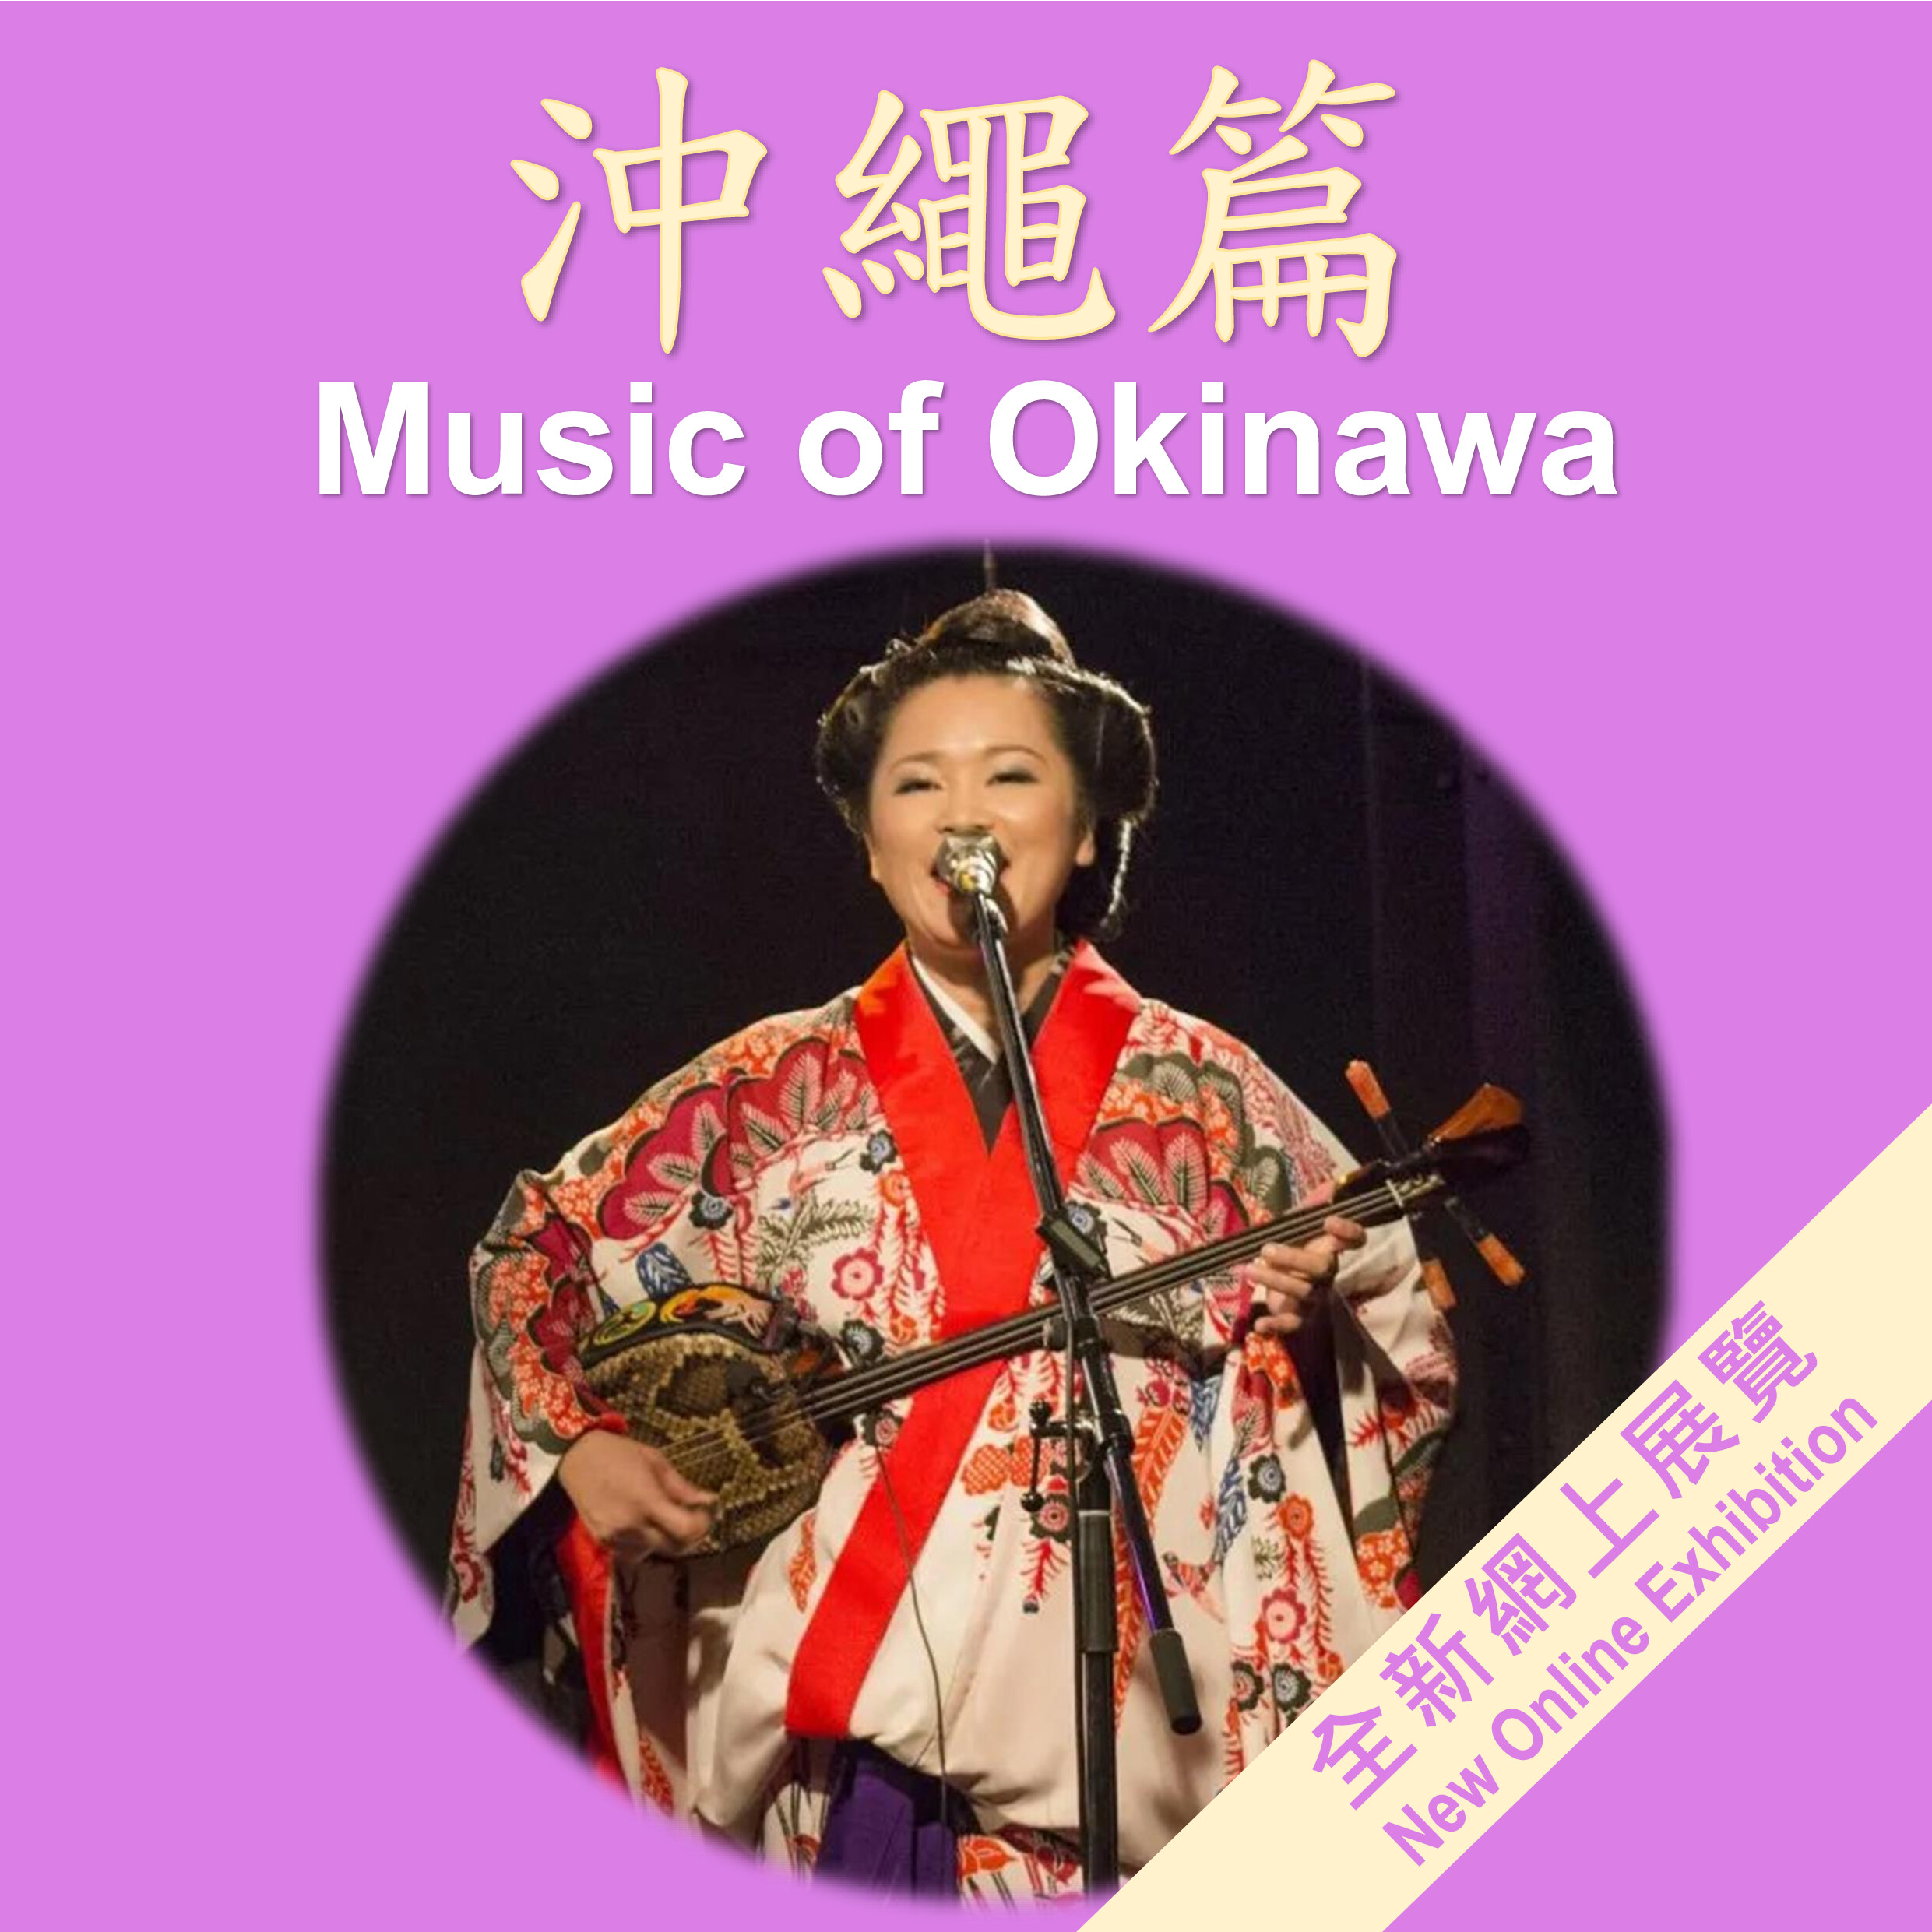 Music Exhibition - Music of Okinawa